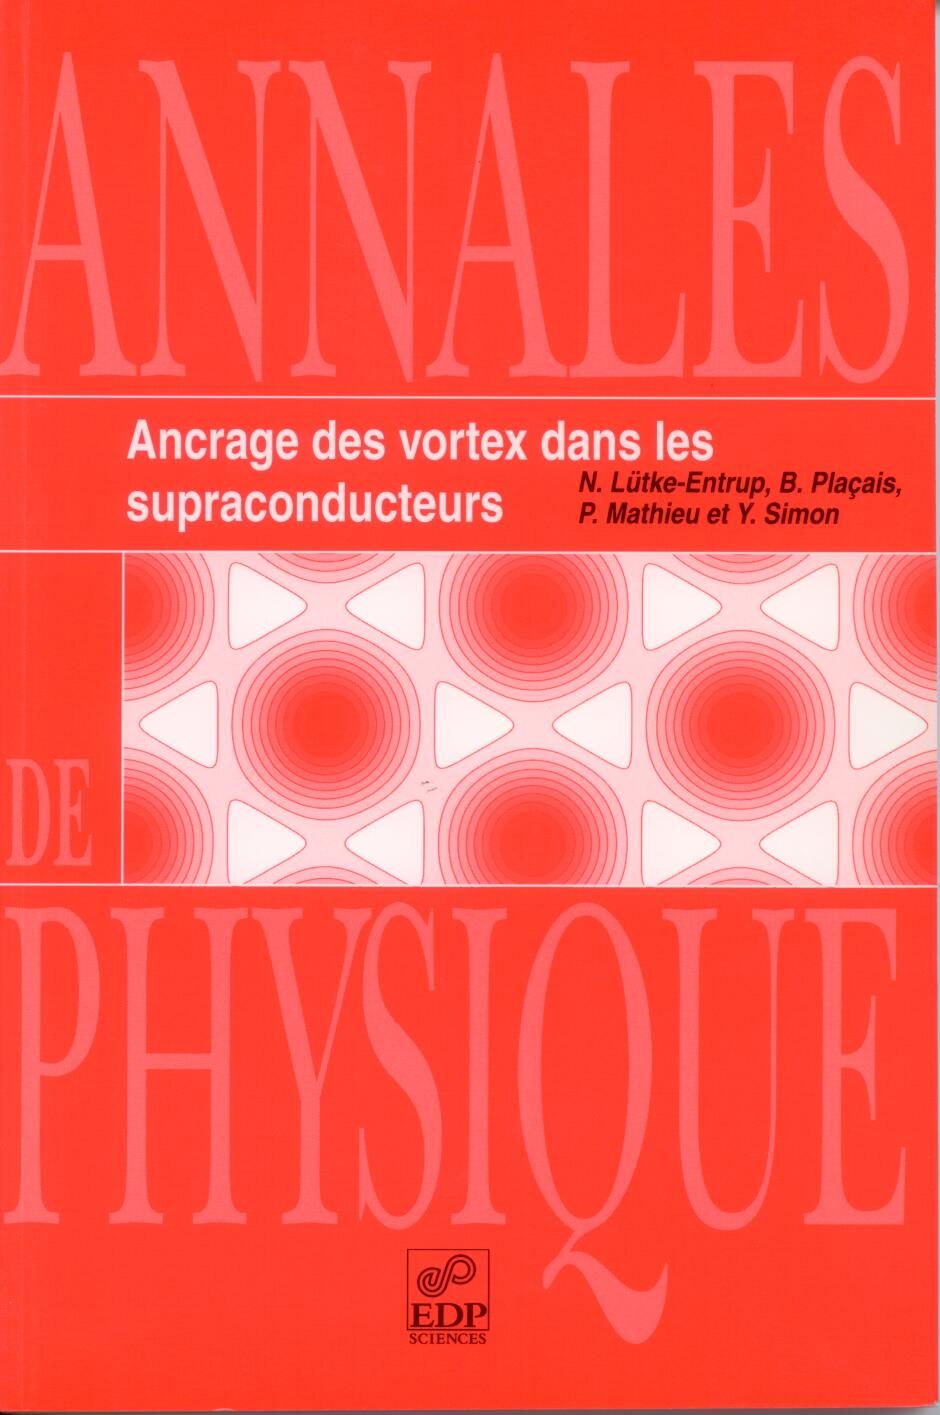 Ancrage des vortex dans les supracondcuteurs, EDP Sciences, 2000